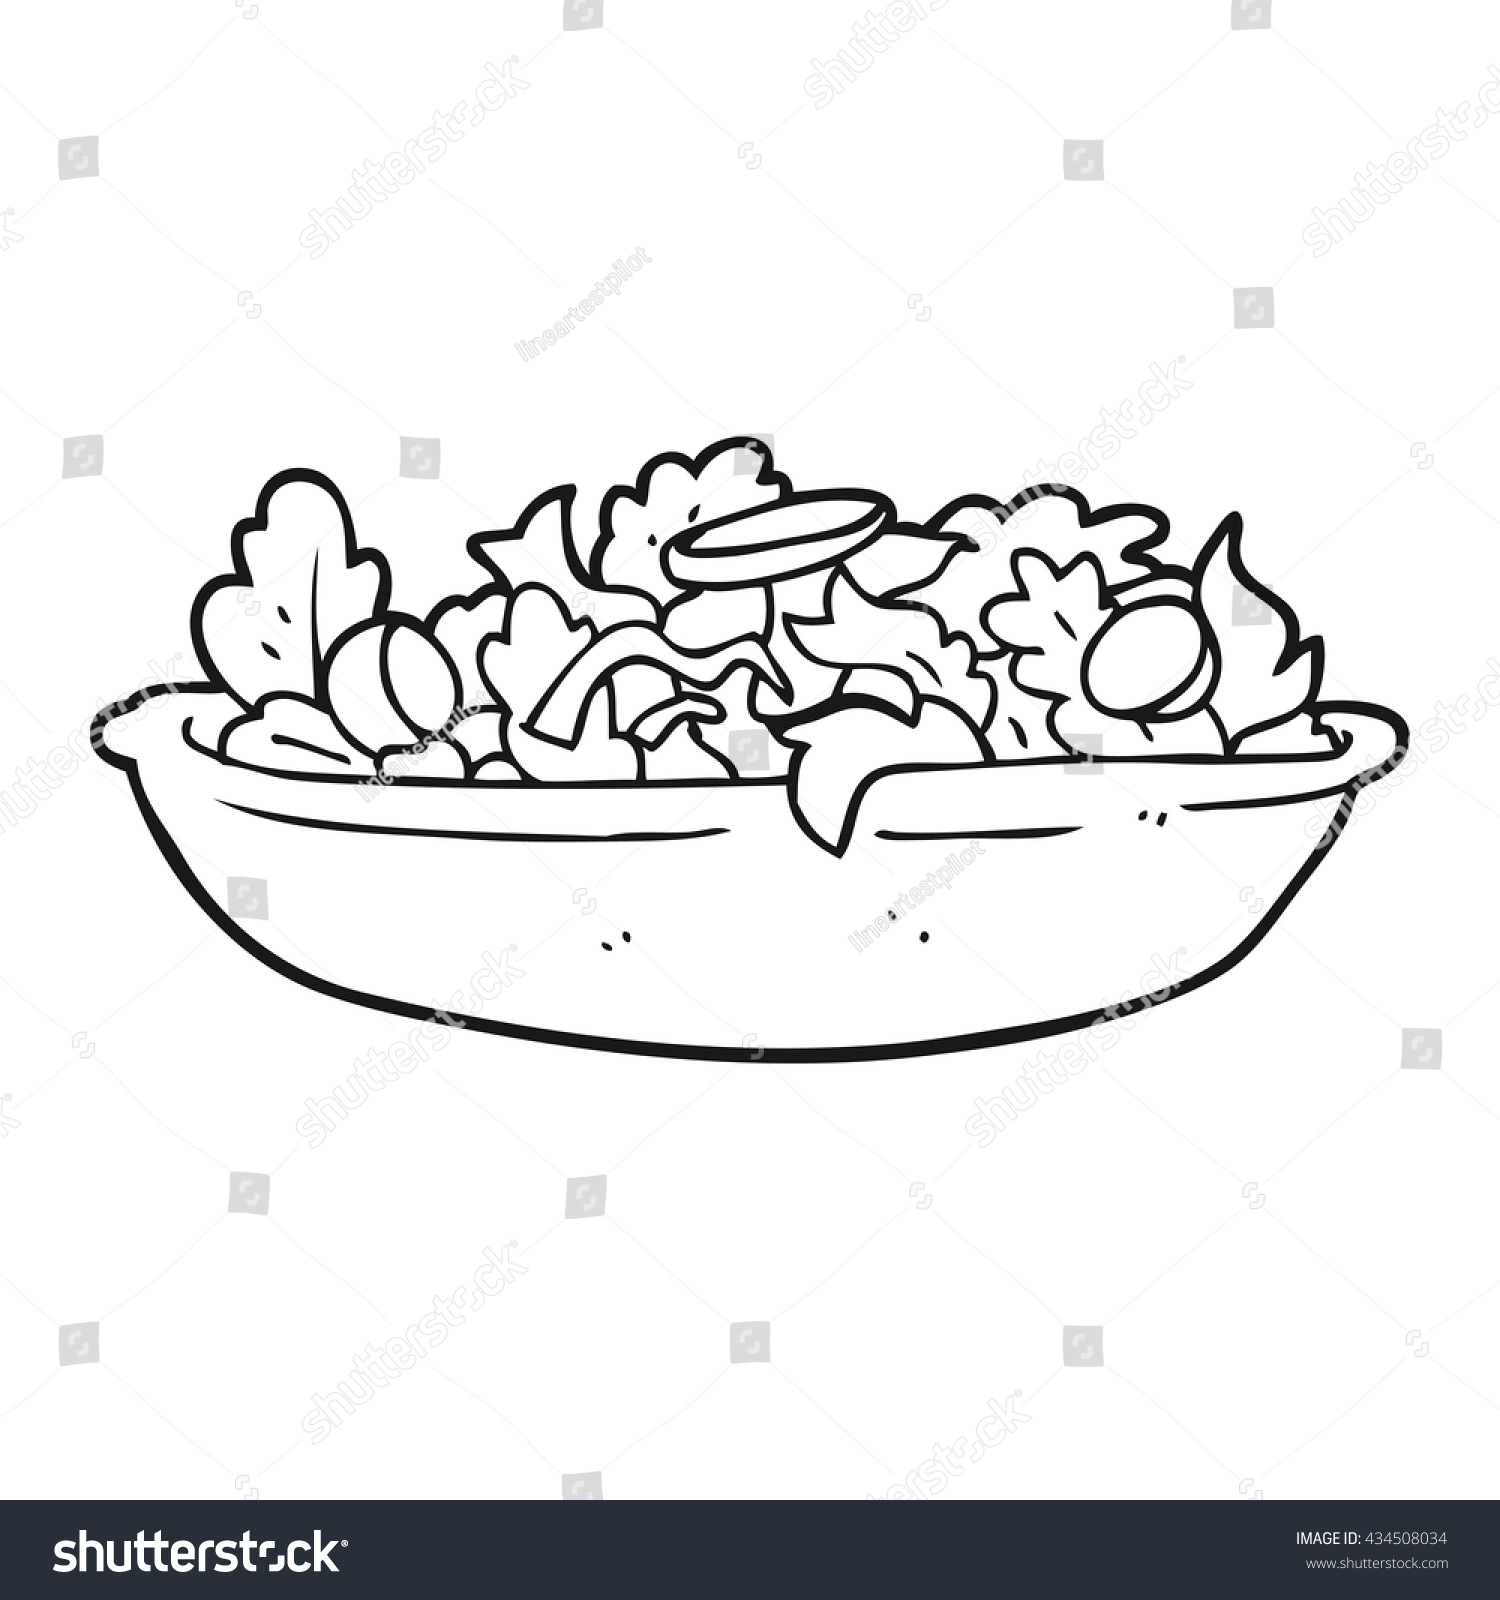 手描きの白黒の漫画サラダ のベクター画像素材 ロイヤリティフリー